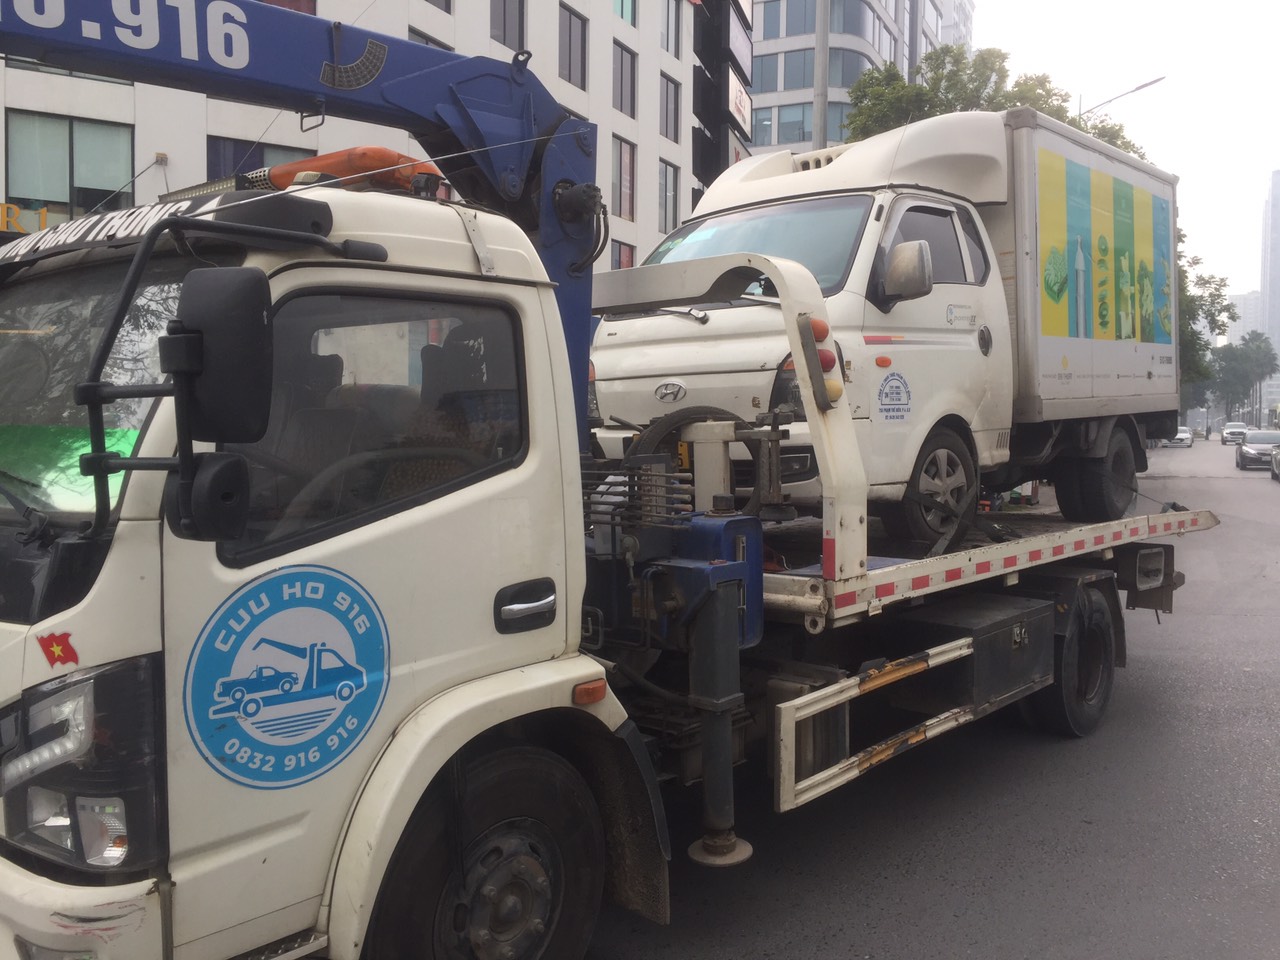 Dịch vụ cứu hộ xe ở Hà Giang siêu tốc, giá rẻ nhất thị trường